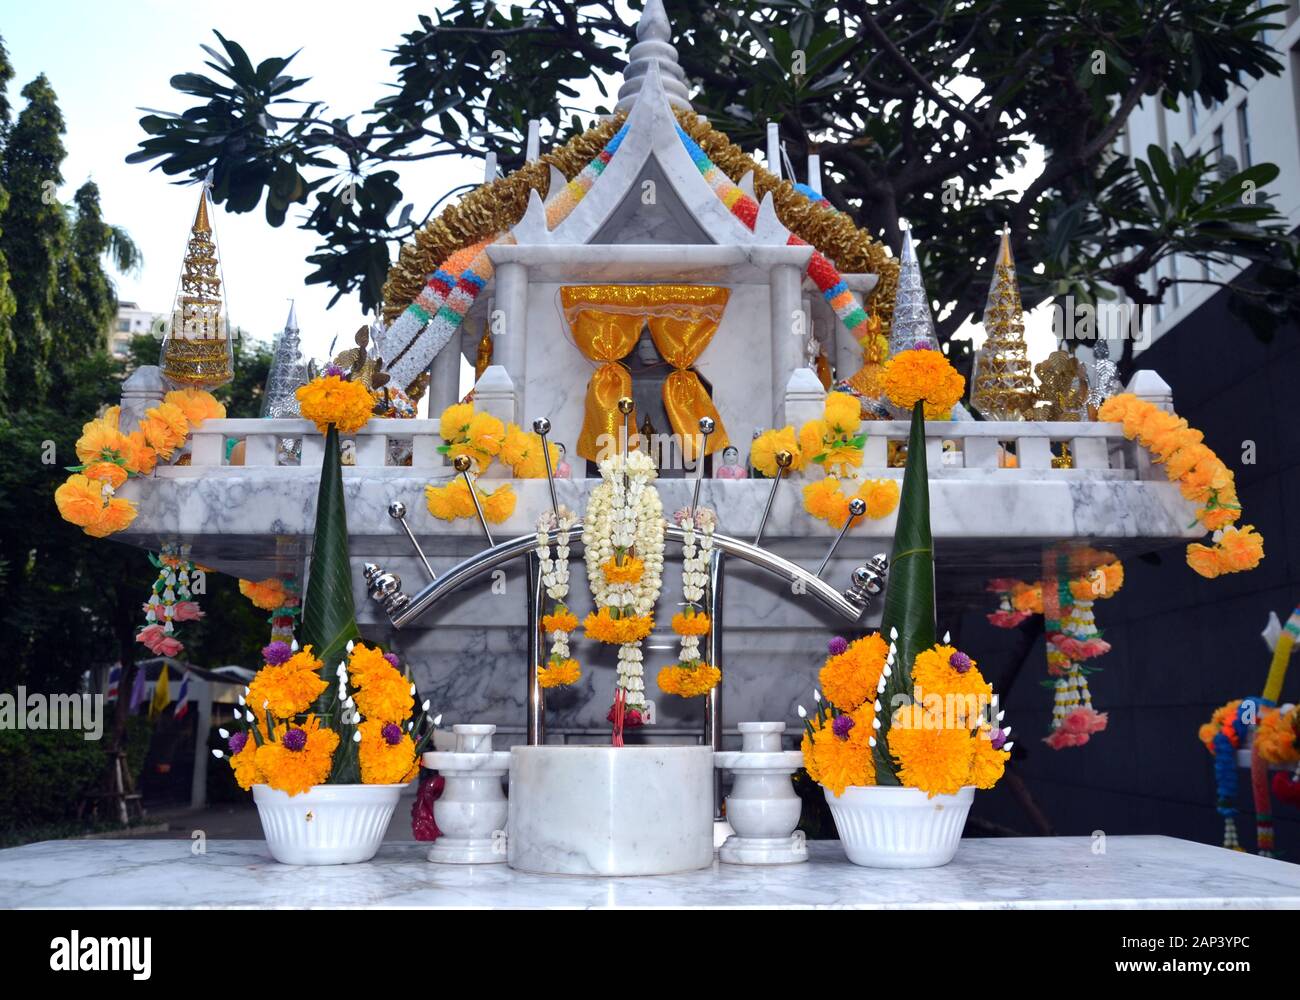 Des guirlandes colorées ou Phuang Malai décorent une maison d'esprit ou un sanctuaire thaïlandais typique à l'extérieur d'un hôtel de Bangkok, Thaïlande, Asie Banque D'Images